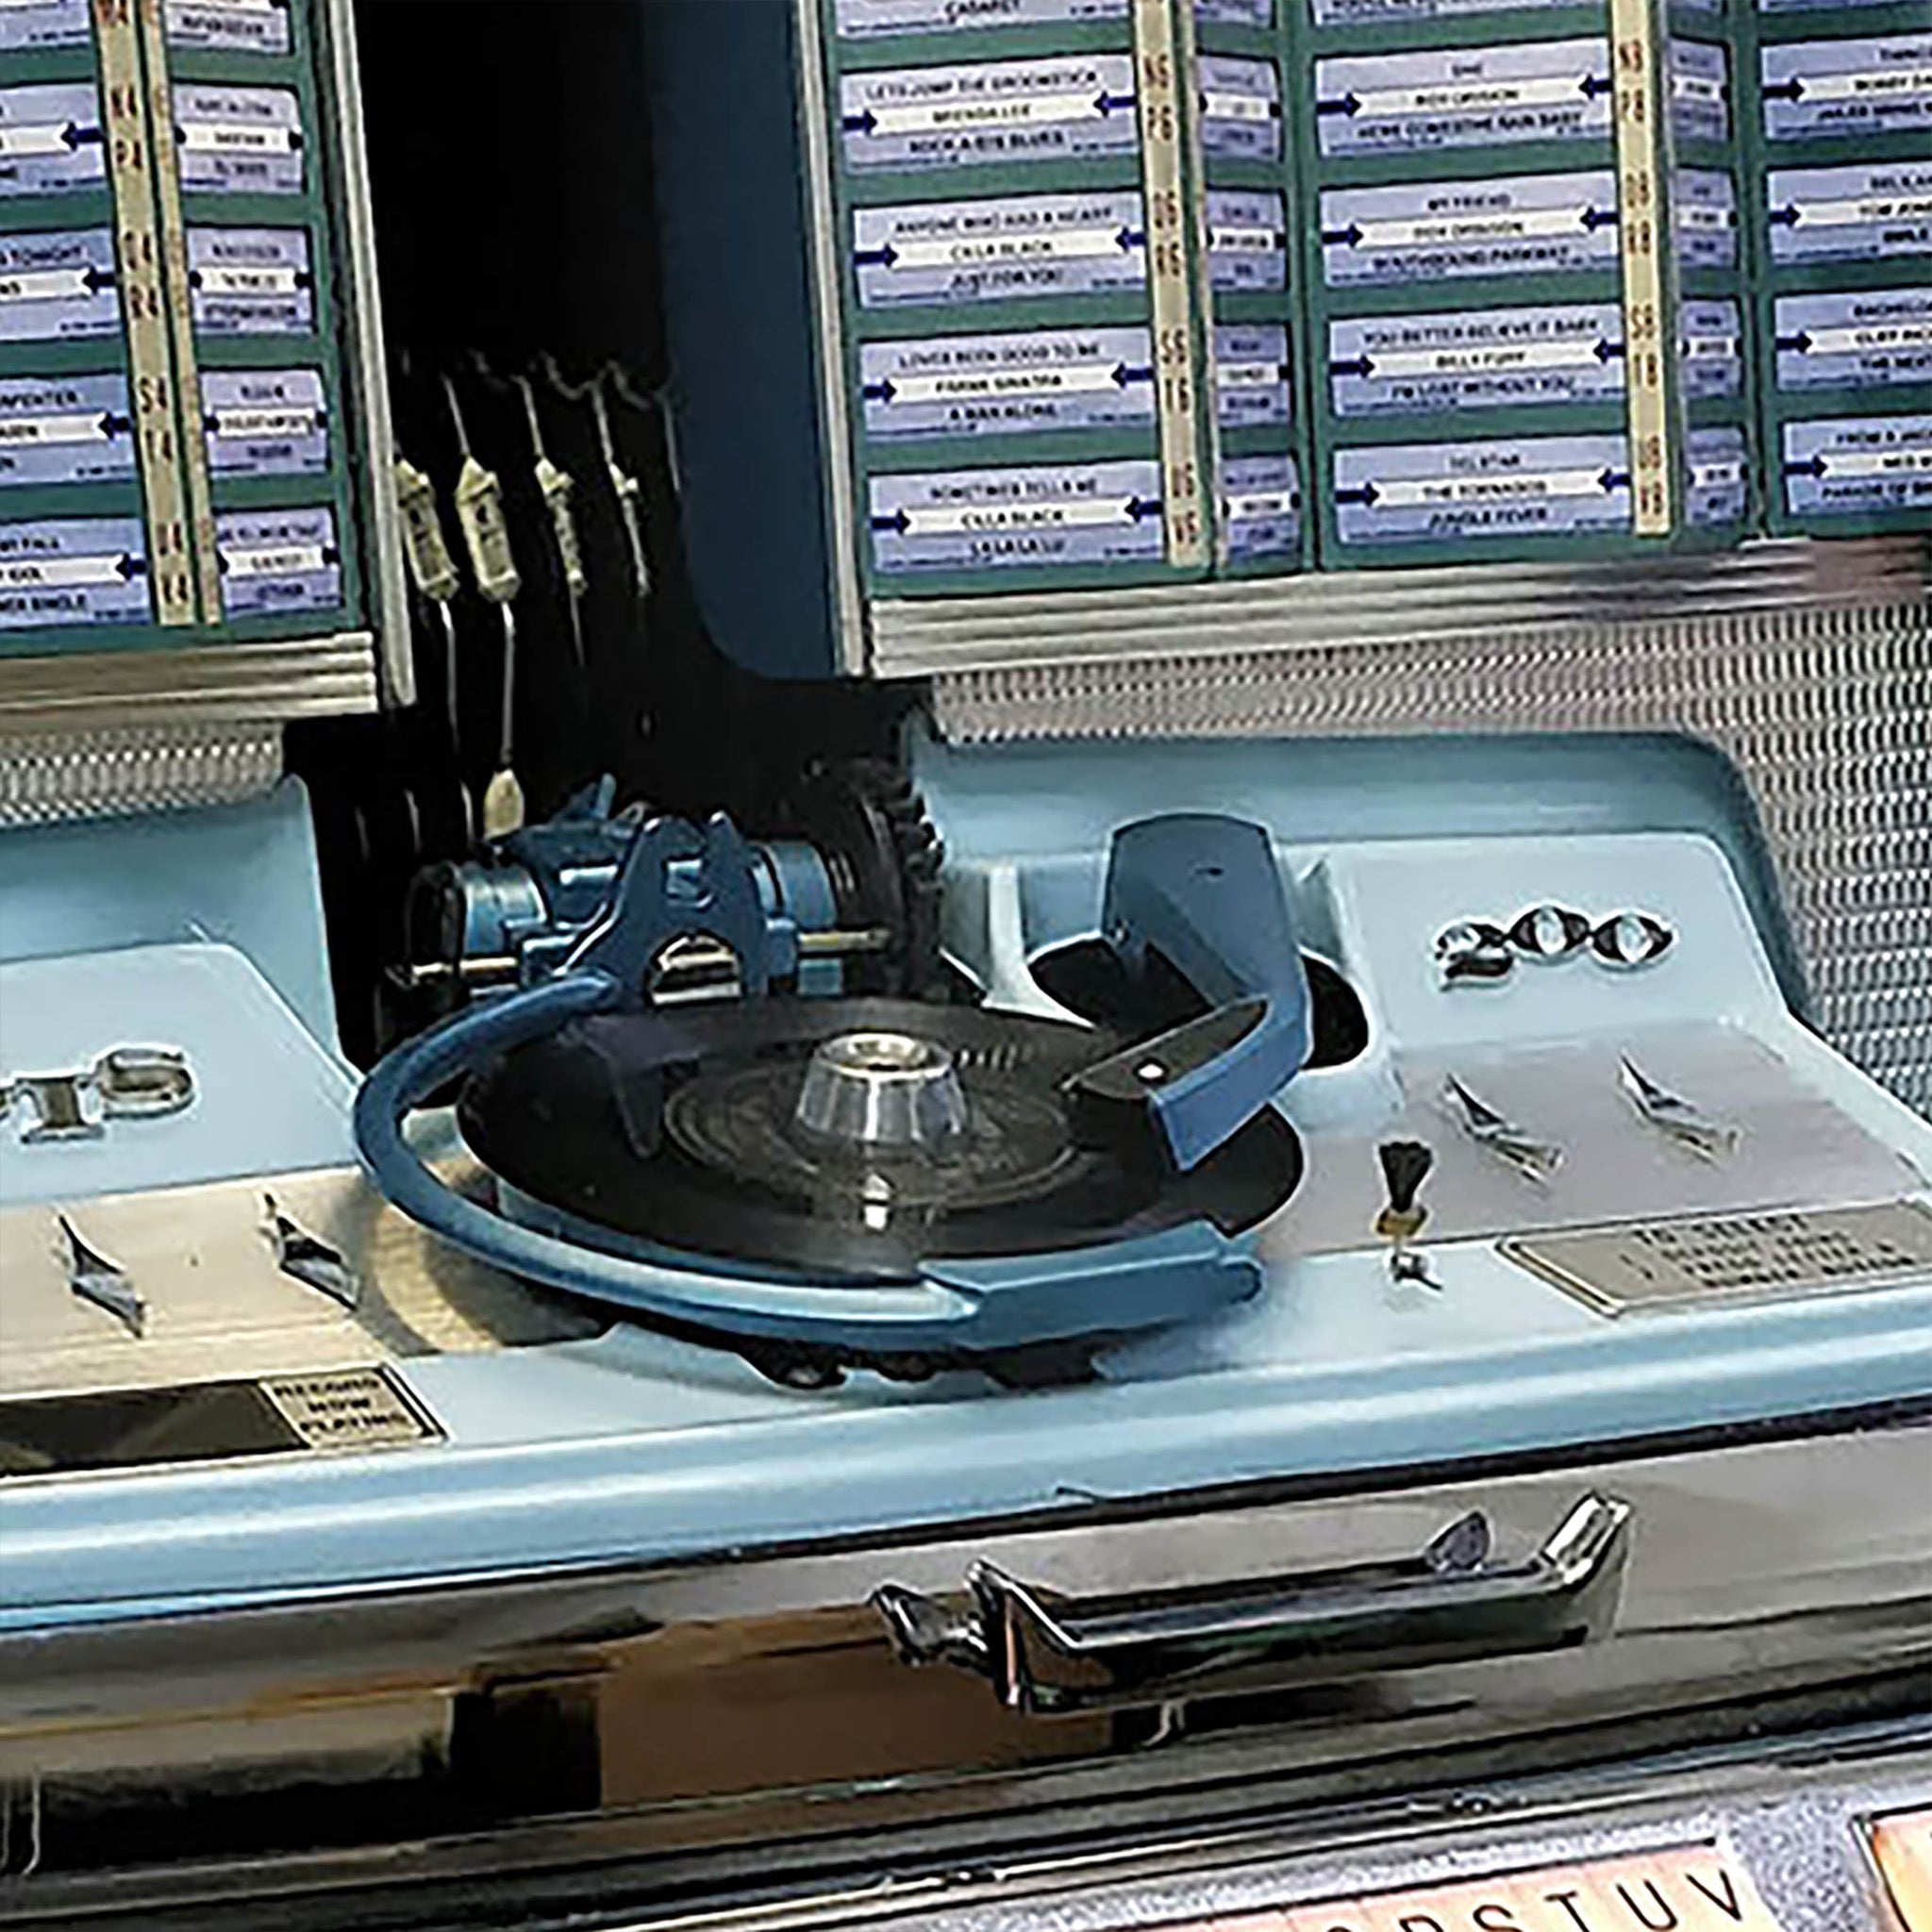 1961 Rock-Ola Regis 200 selection Jukebox - Coming soon